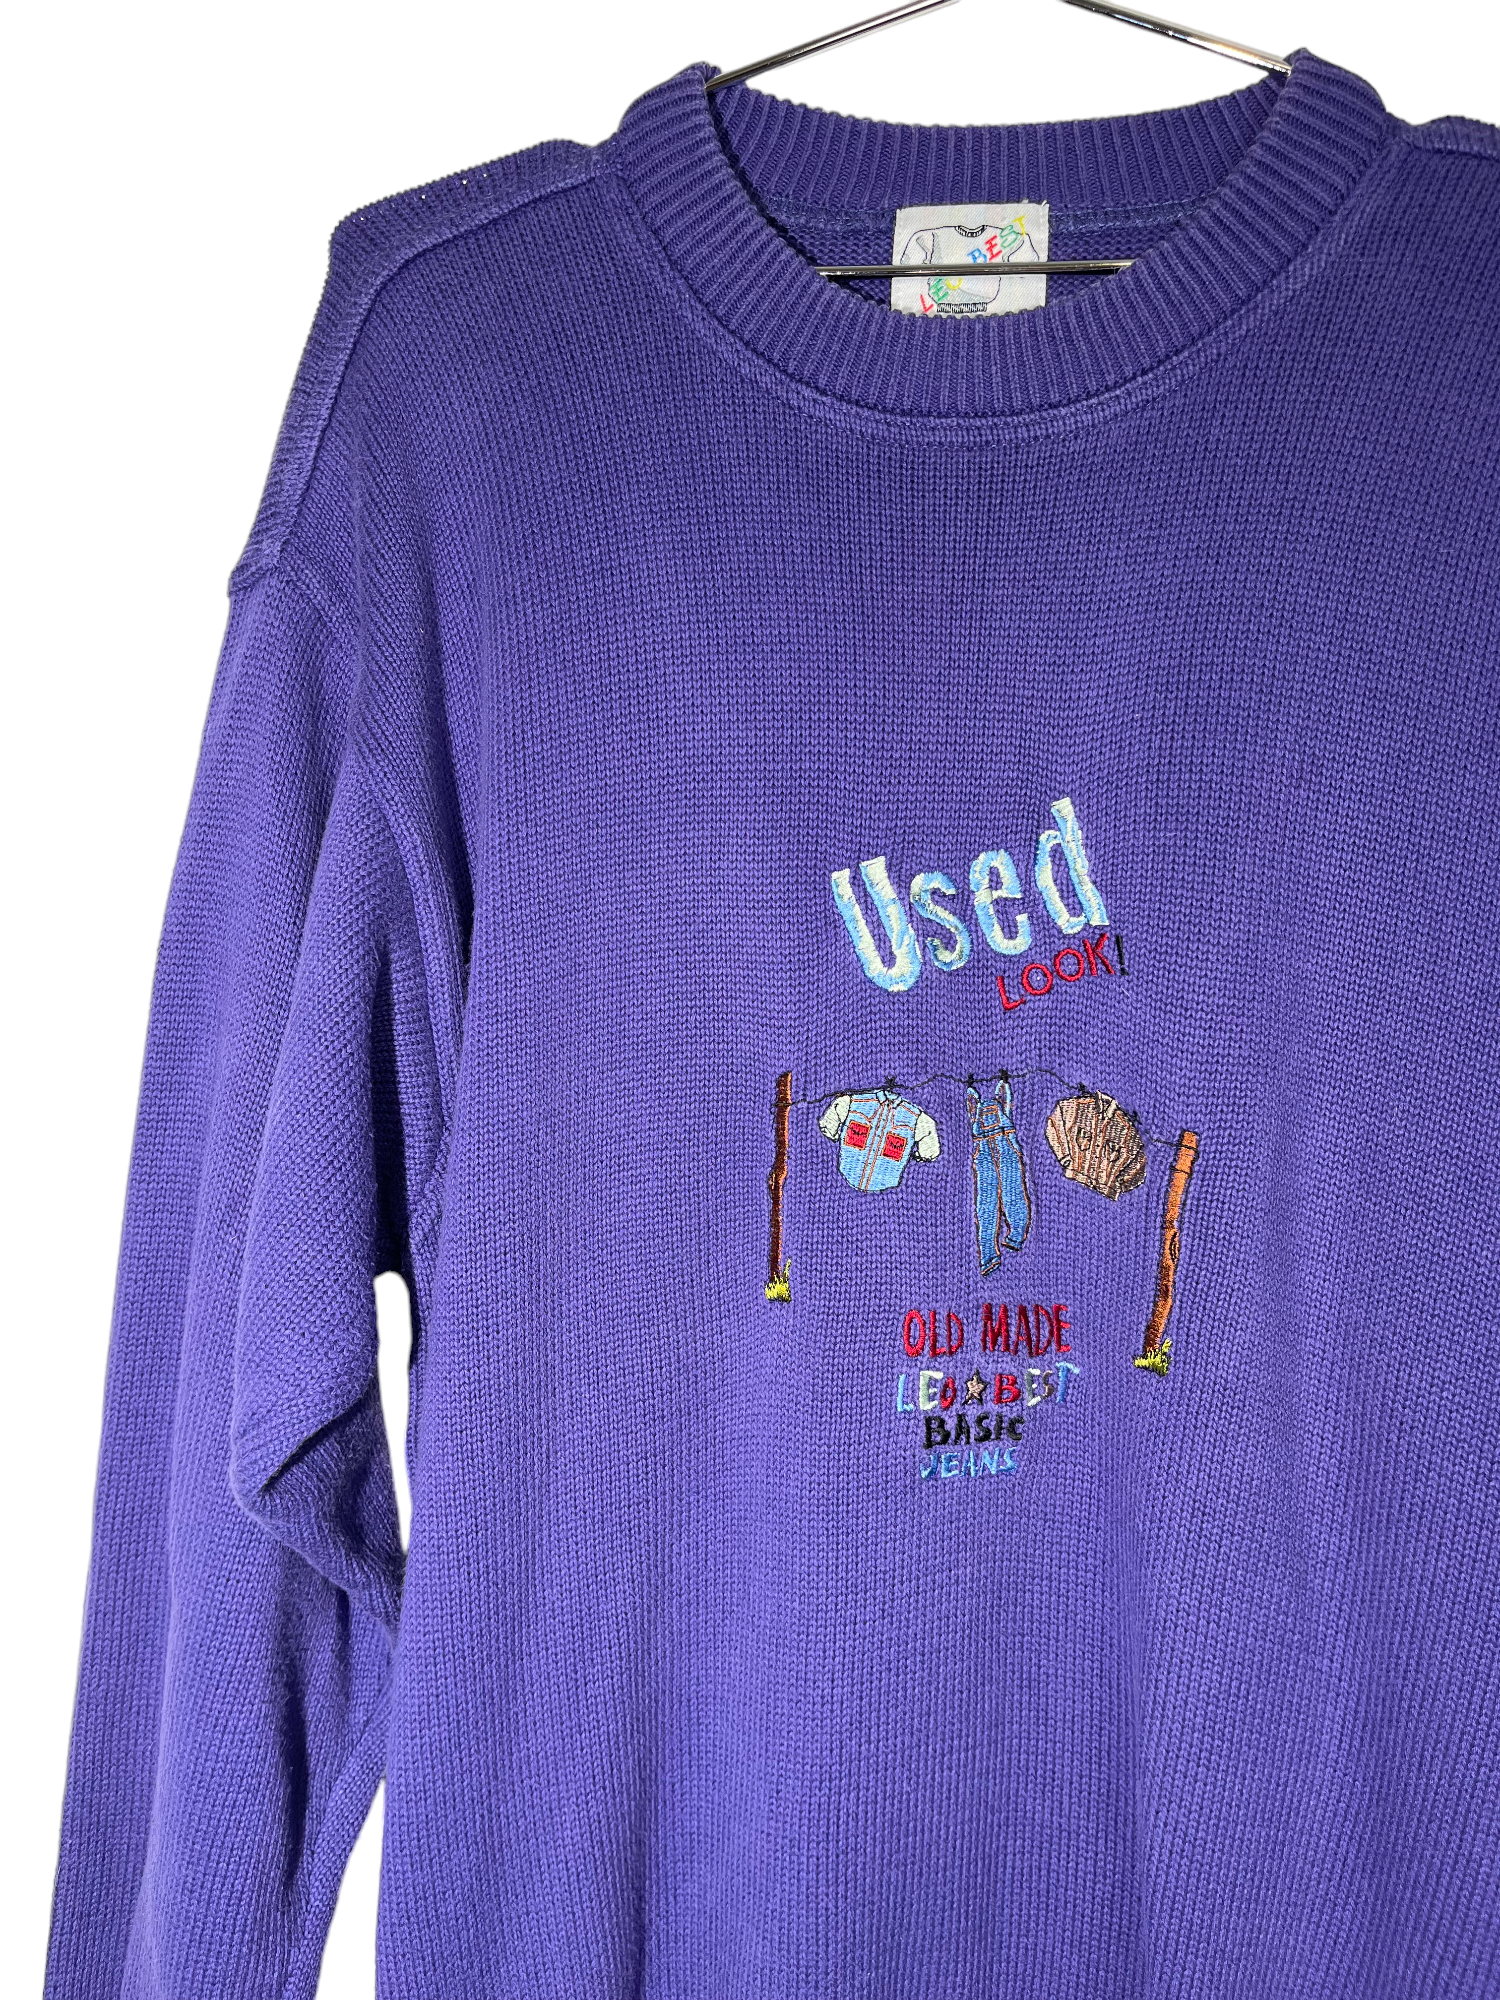 Leo Best Knitwear Purple Crewneck Sweater